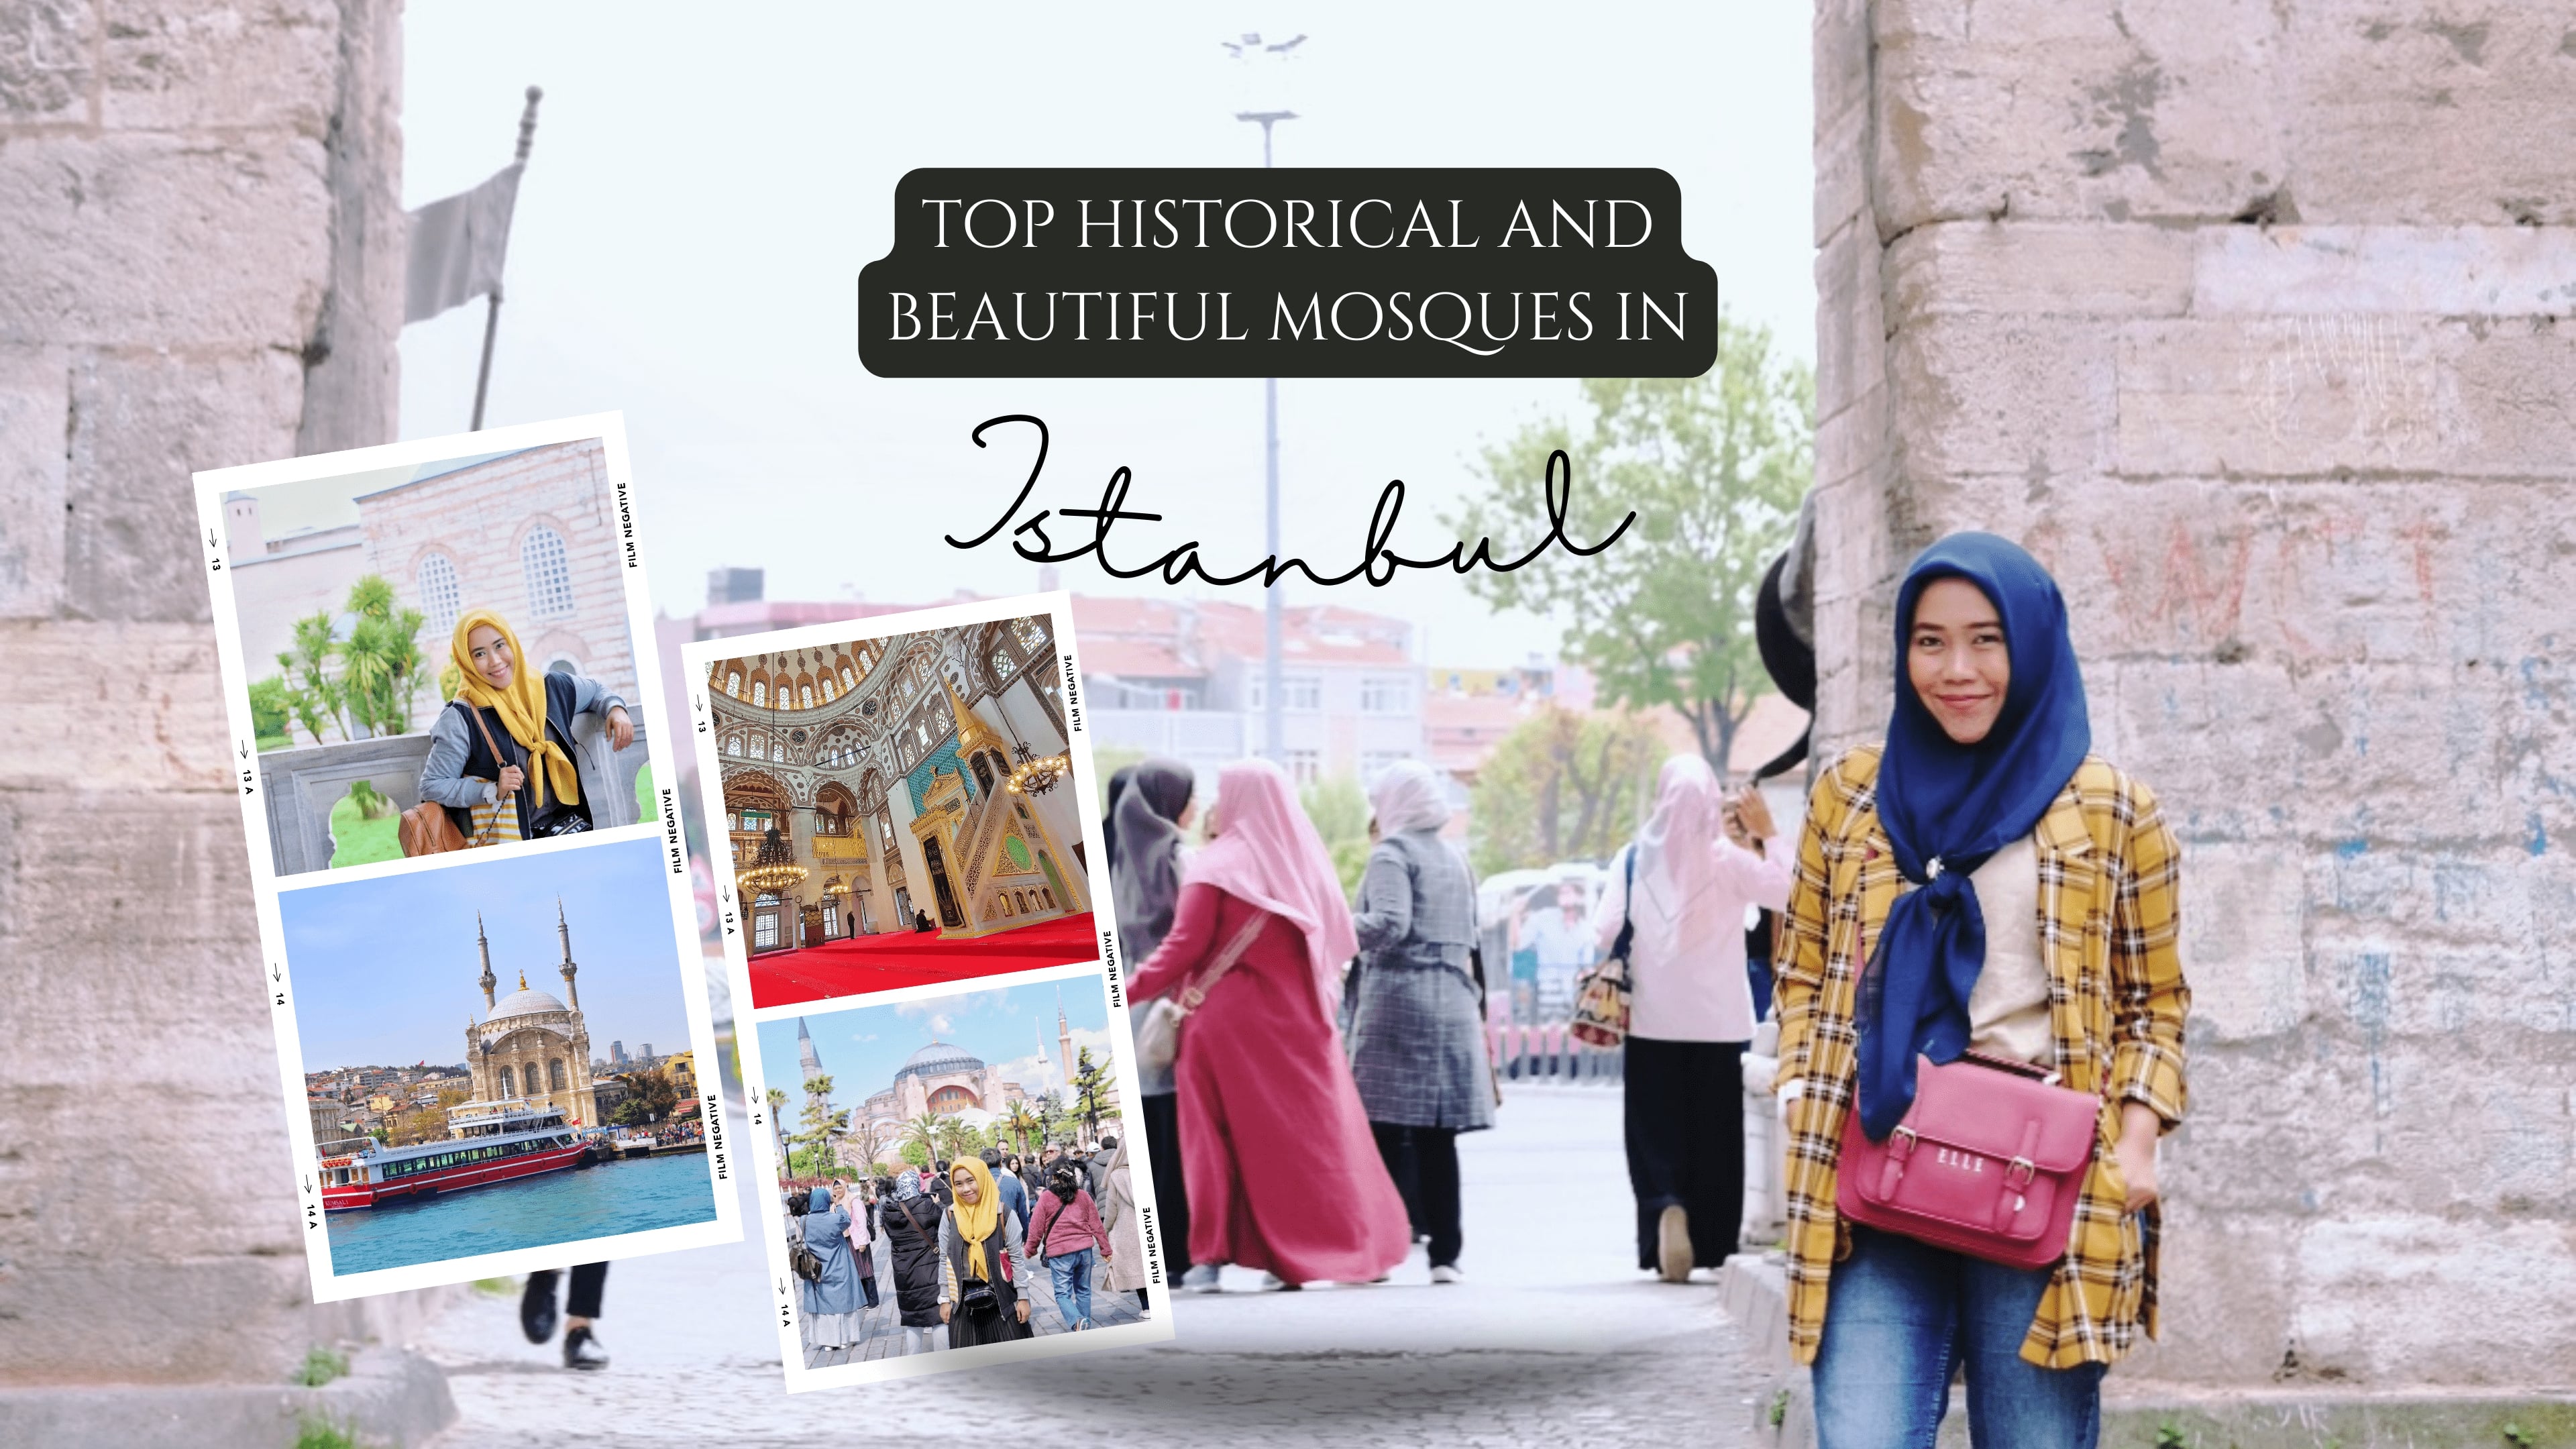 Rekomendasi Destinasi Wisata Turki: 9 Masjid Cantik dan Bersejarah di Istanbul